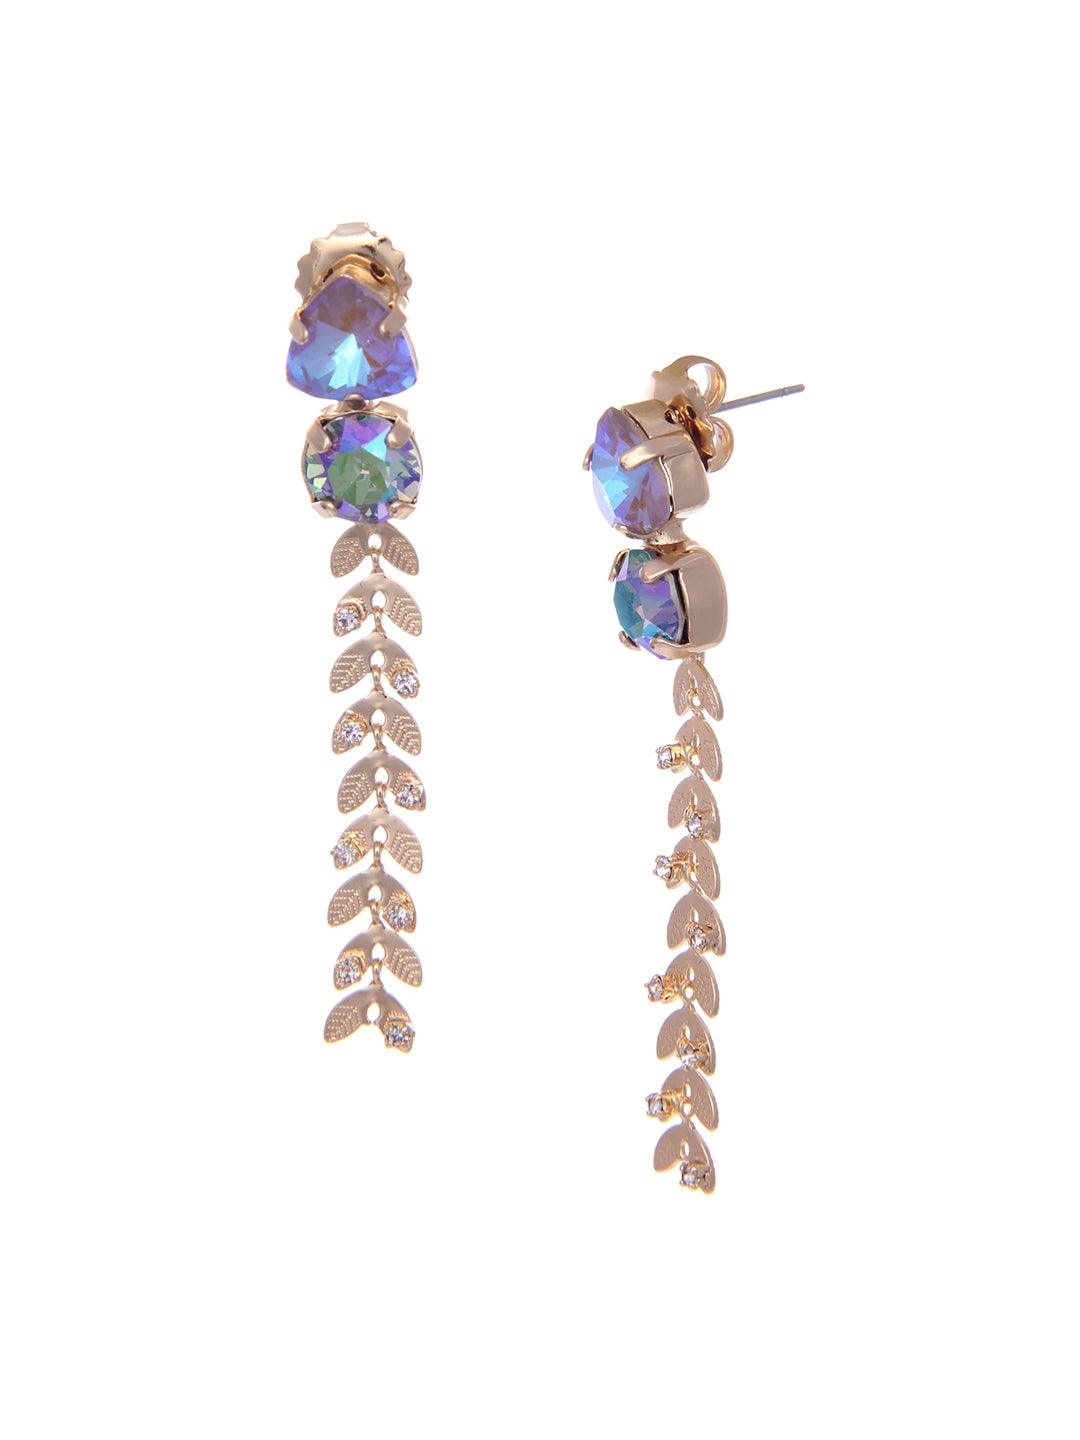 Ishhaara Blue Crystal Trail Earrings - Blue